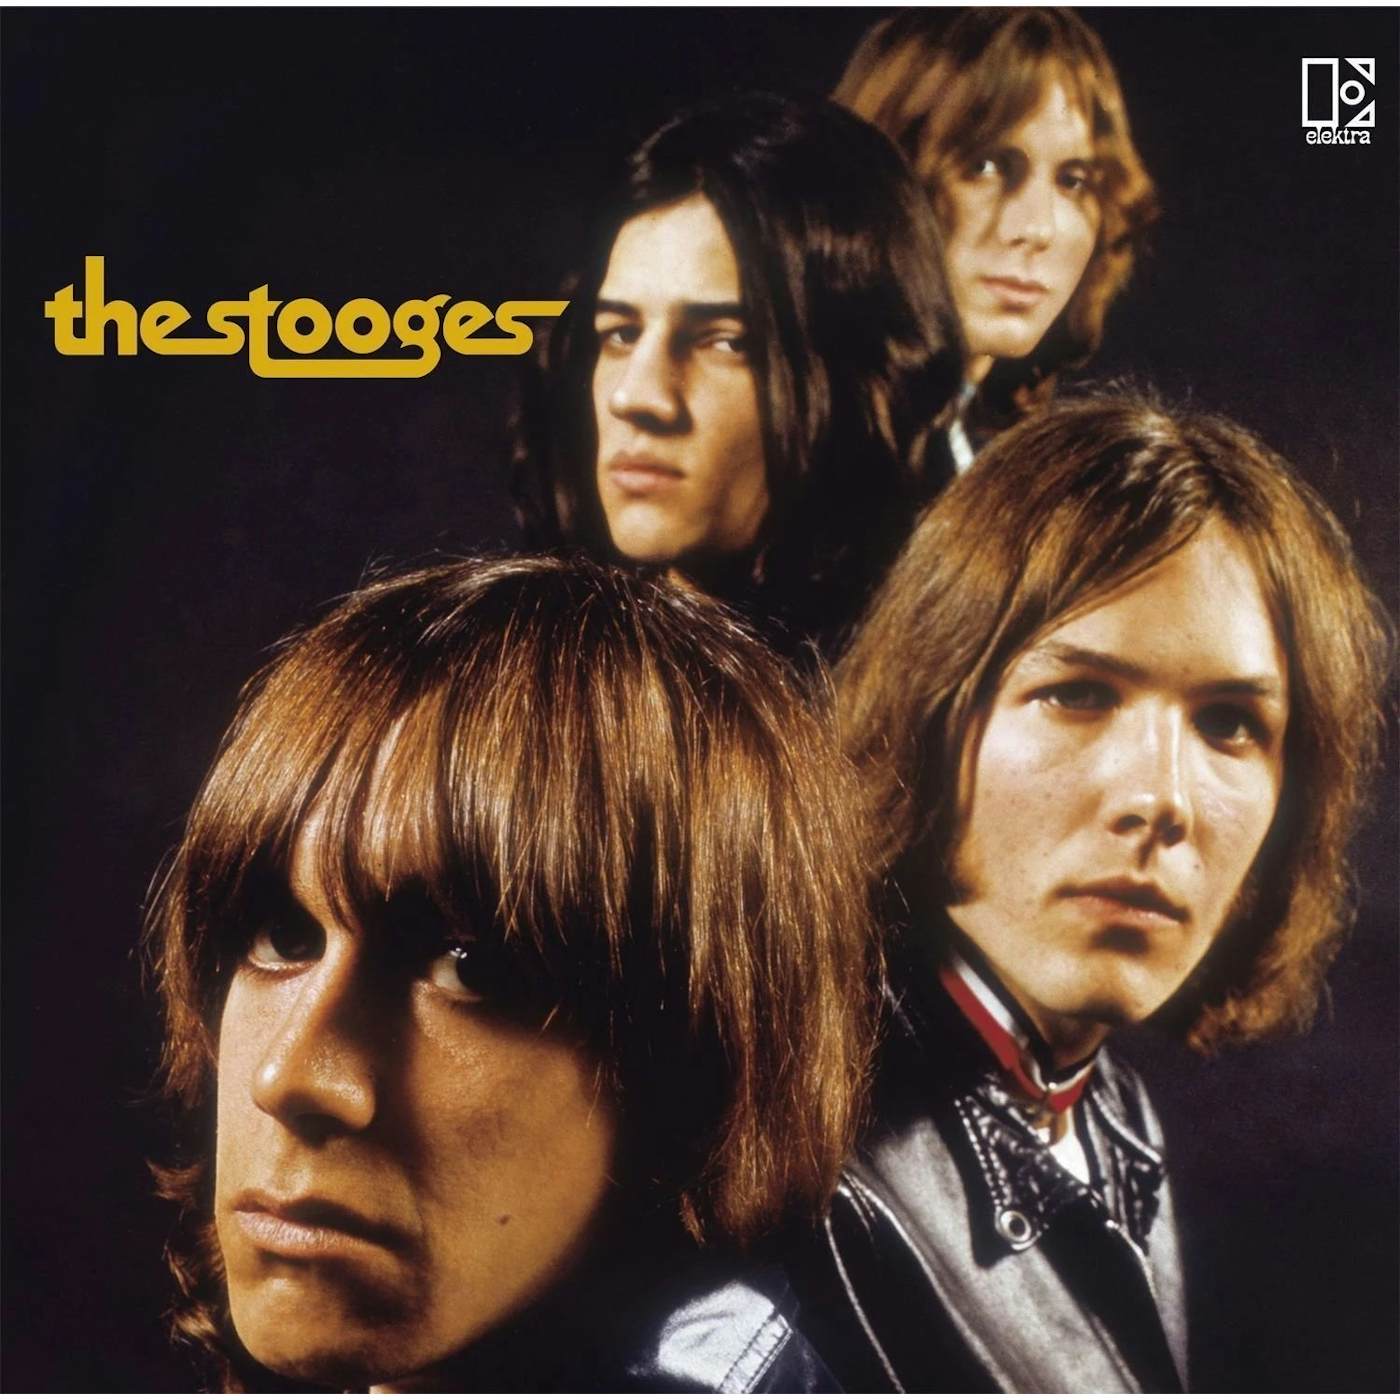 The Stooges - Stooges